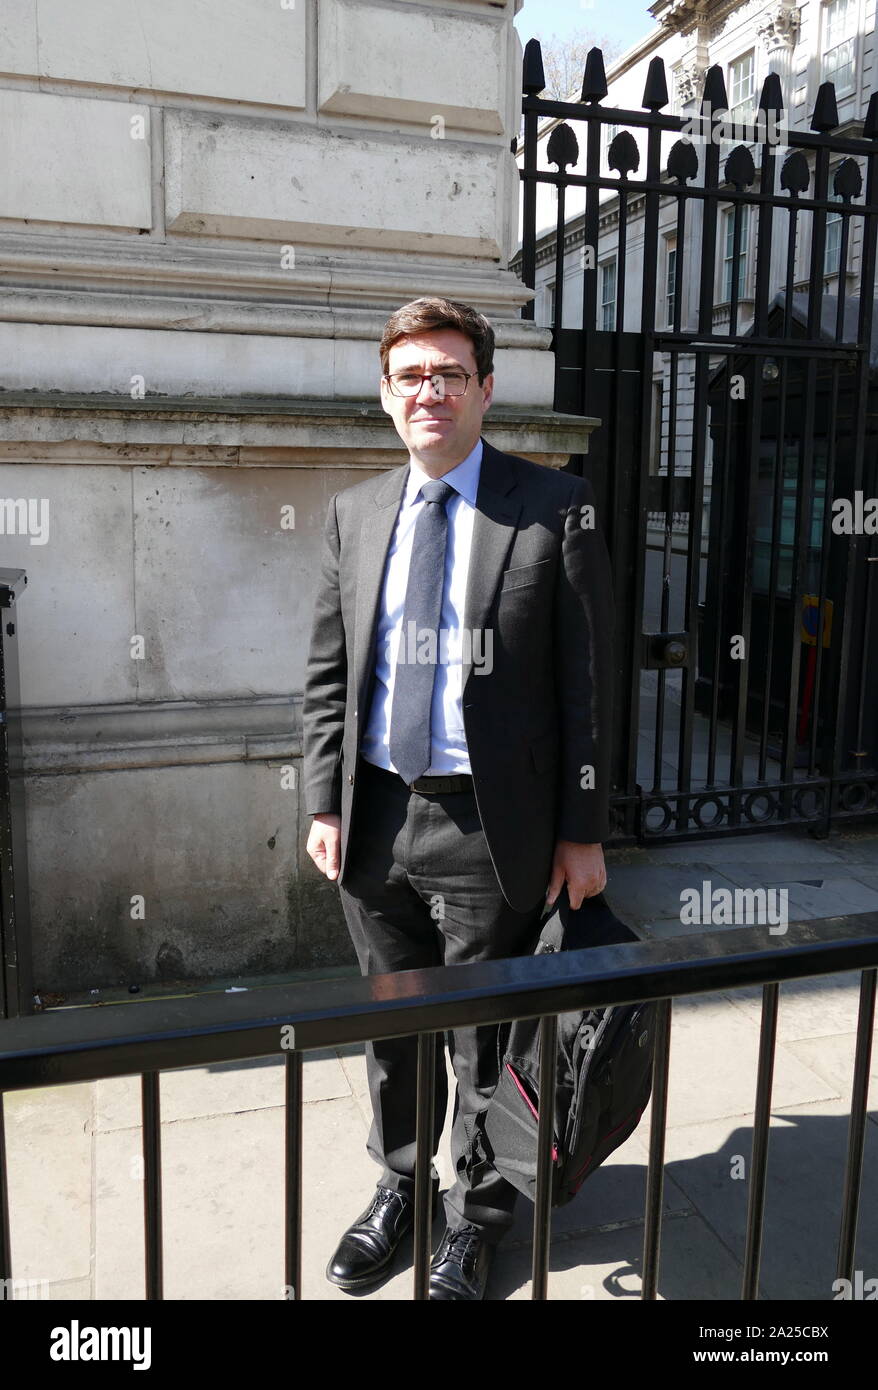 Andy Burnham visits Downing Street für eine "Messer Kriminalität Gipfeltreffen vom April 2019. Andrew Burnham; die britischen Labour-Abgeordneten und die Kooperative Politiker; Bürgermeister von Greater Manchester seit Mai 2017. Zuvor war er Mitglied des Parlaments (MP) Stockfoto